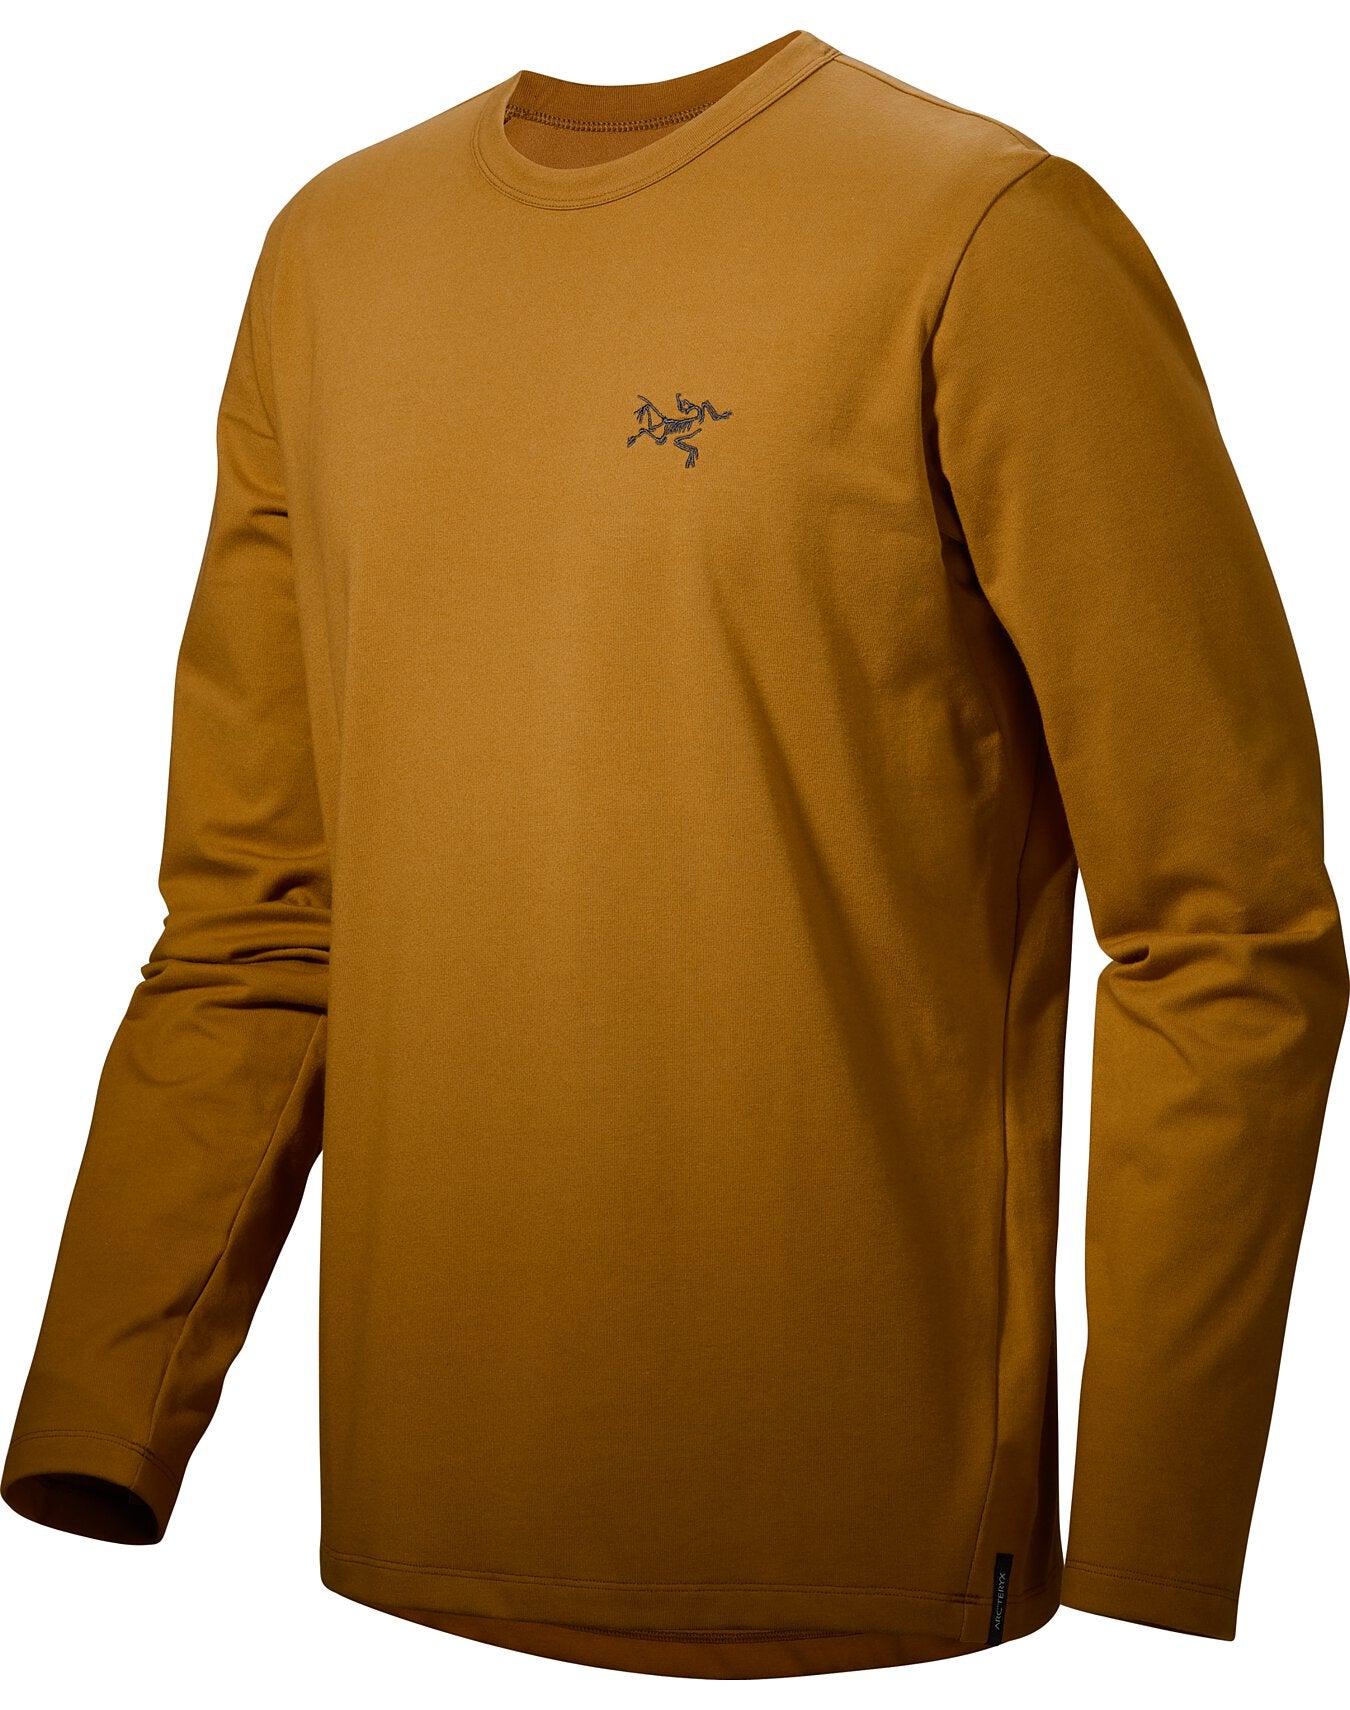 ダイワピア39国内正規品 アークテリクス キャプティブ アークワード LSシャツ メンズ XL